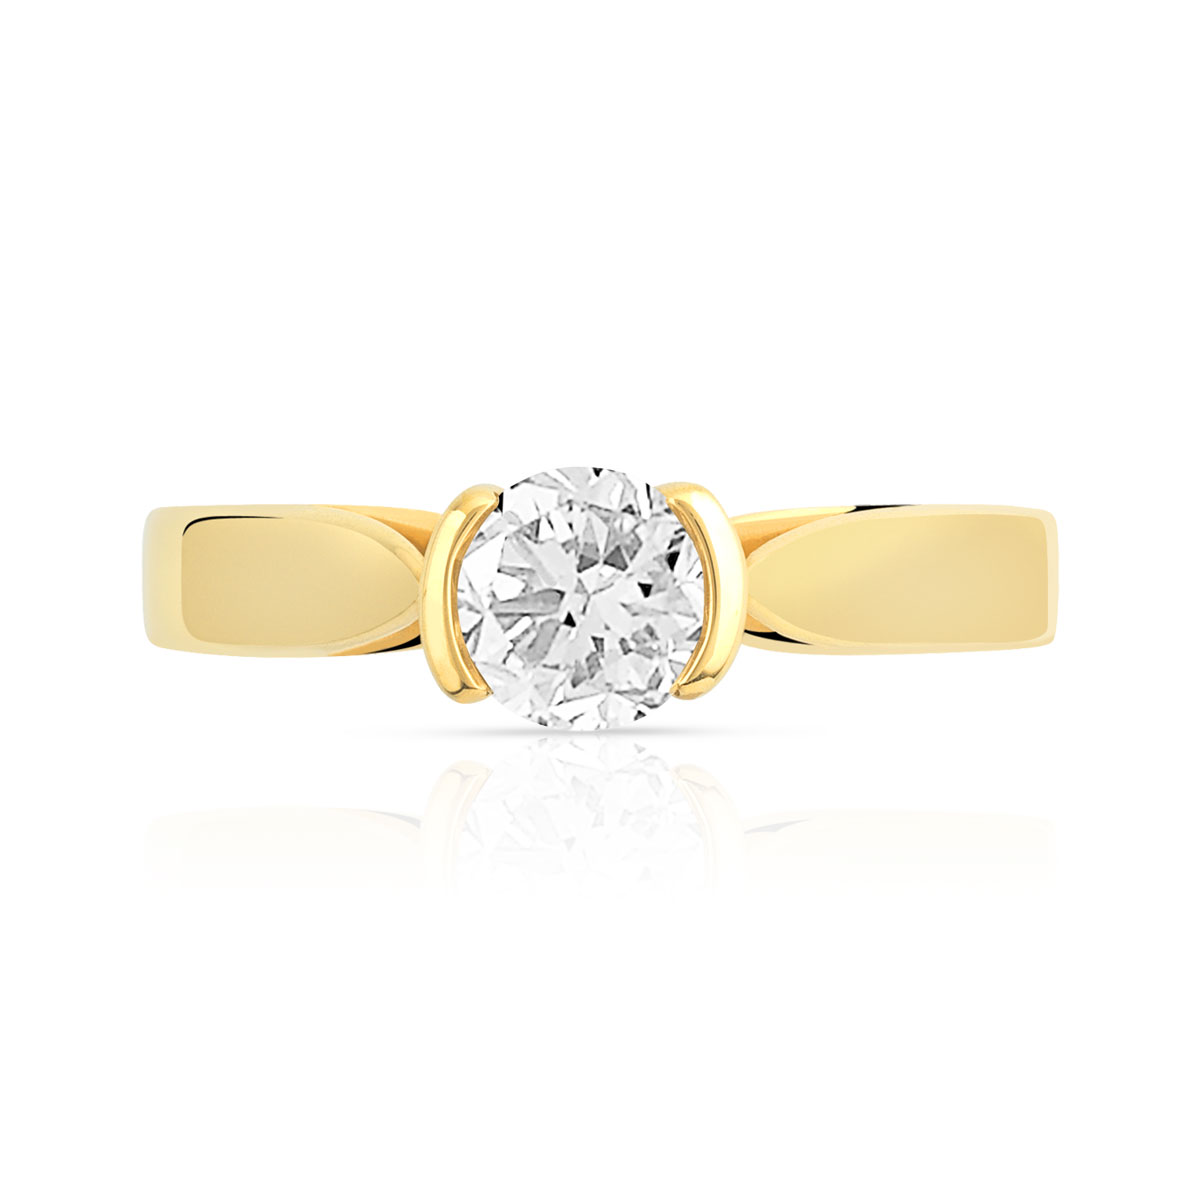 Bague solitaire or 750 jaune diamant synthétique 0.50 carat - vue 3